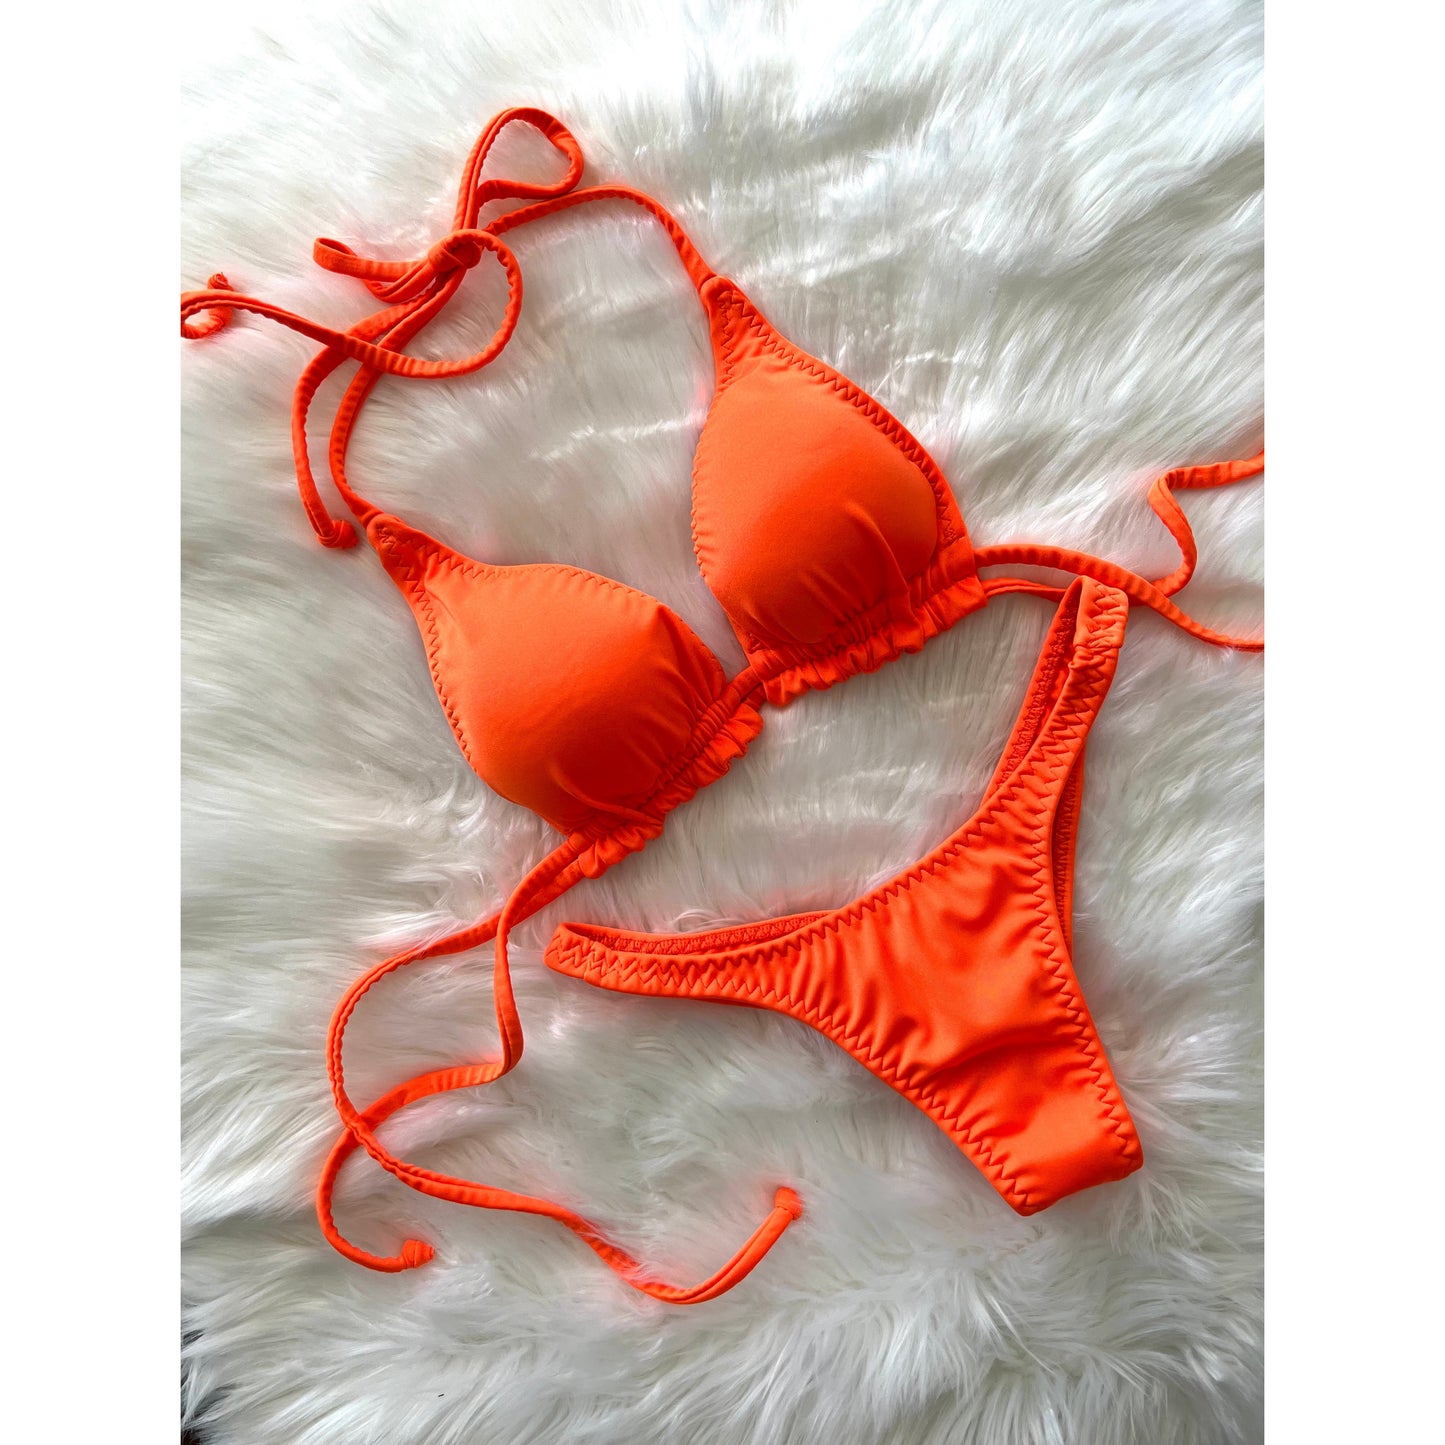 NEMO Bikini TOP - Outrageous Orange